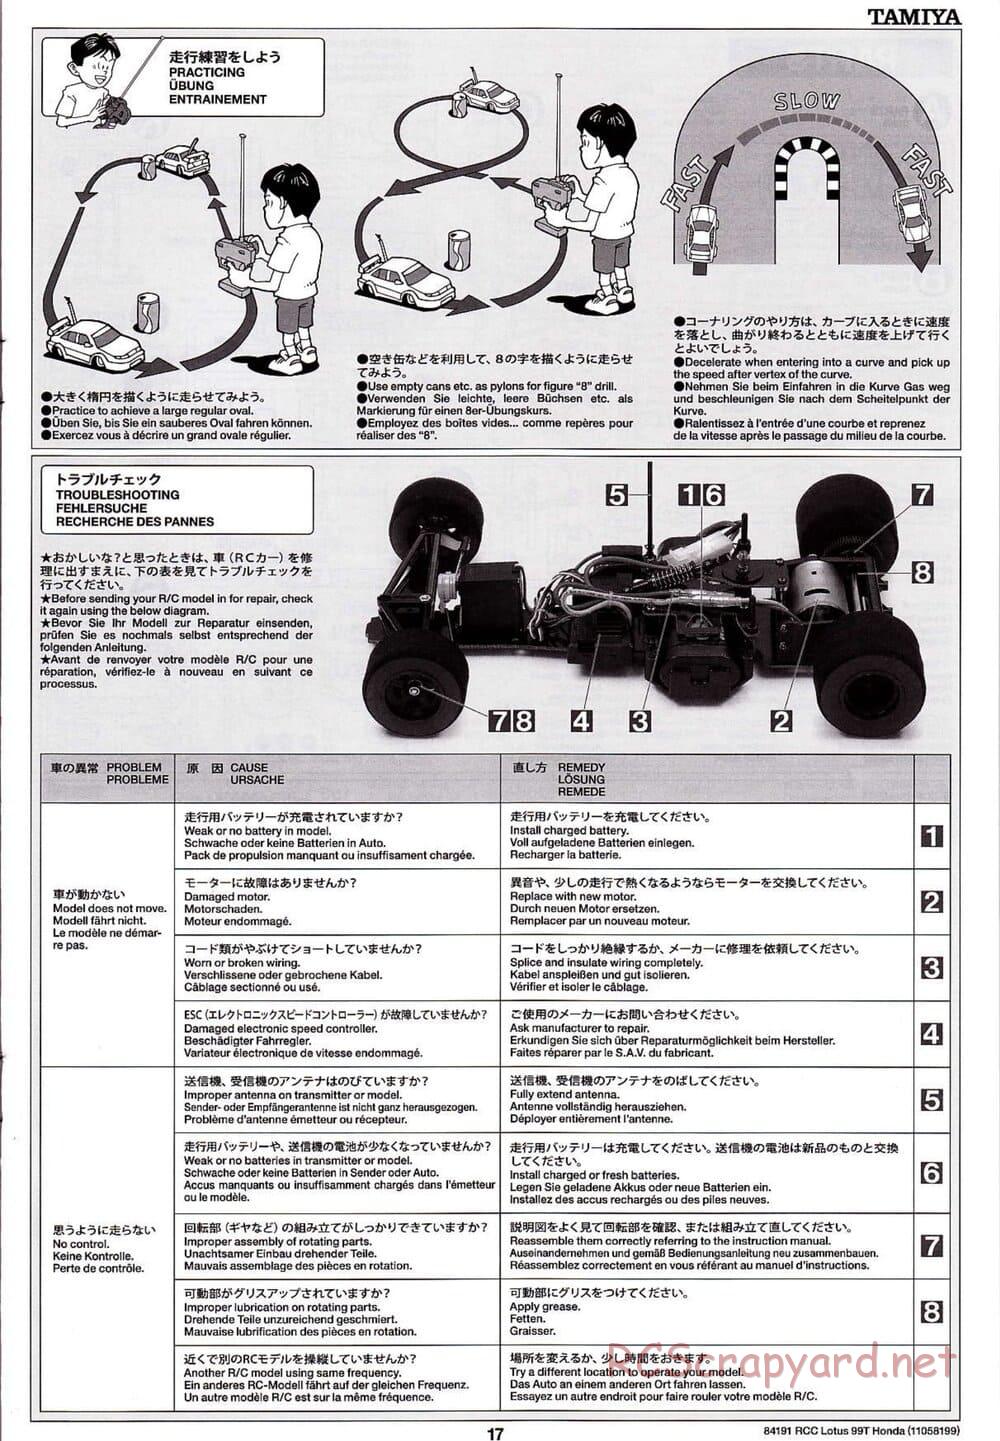 Tamiya - Team Lotus 99T Honda - F103 Chassis - Manual - Page 17